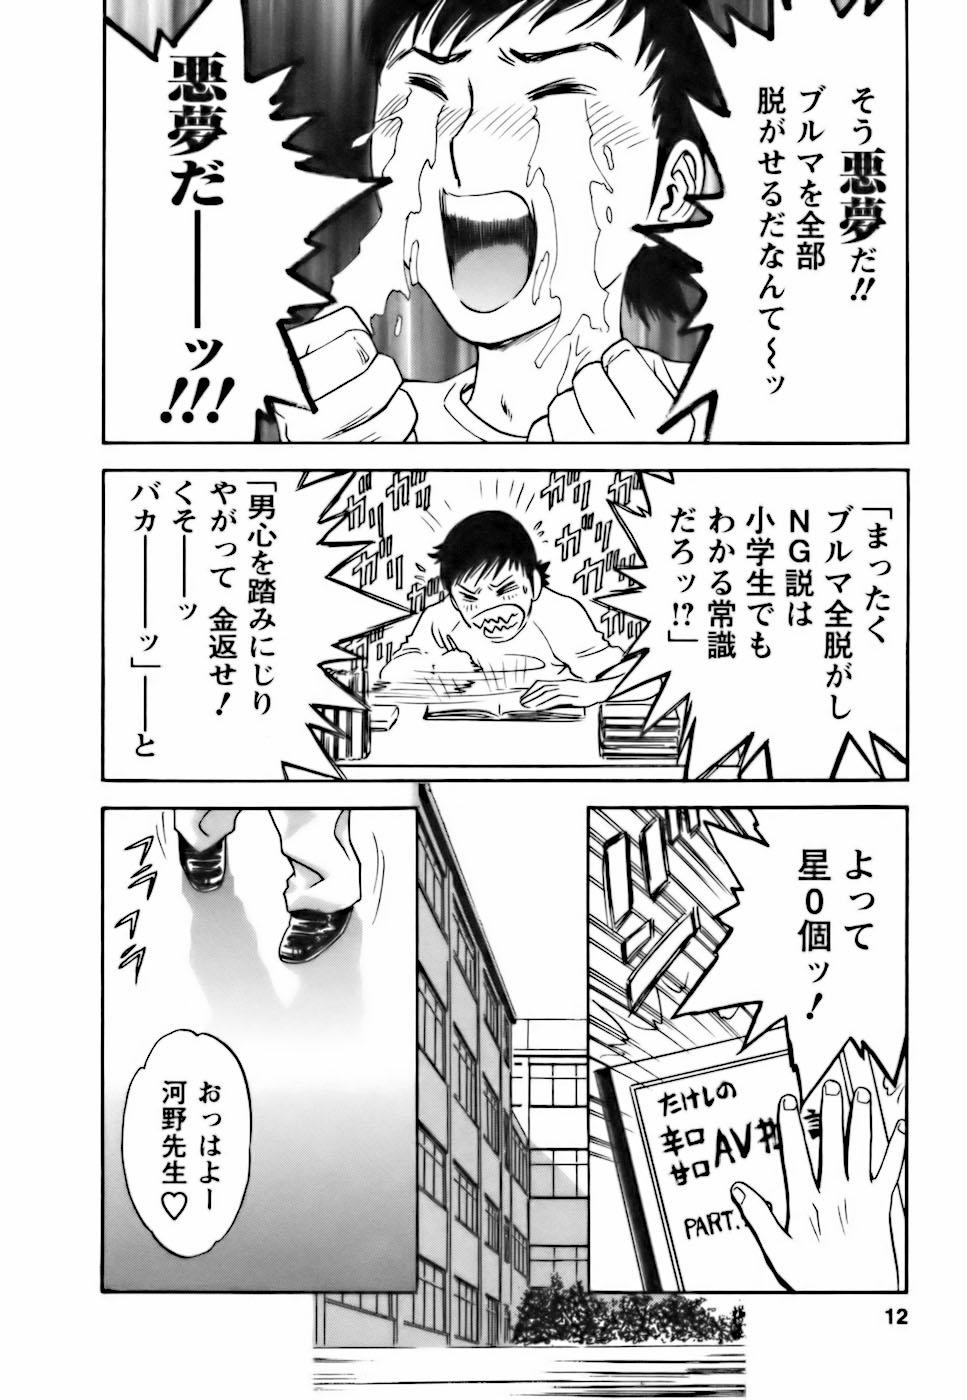 [Hidemaru] Mo-Retsu! Boin Sensei (Boing Boing Teacher) Vol.3 9